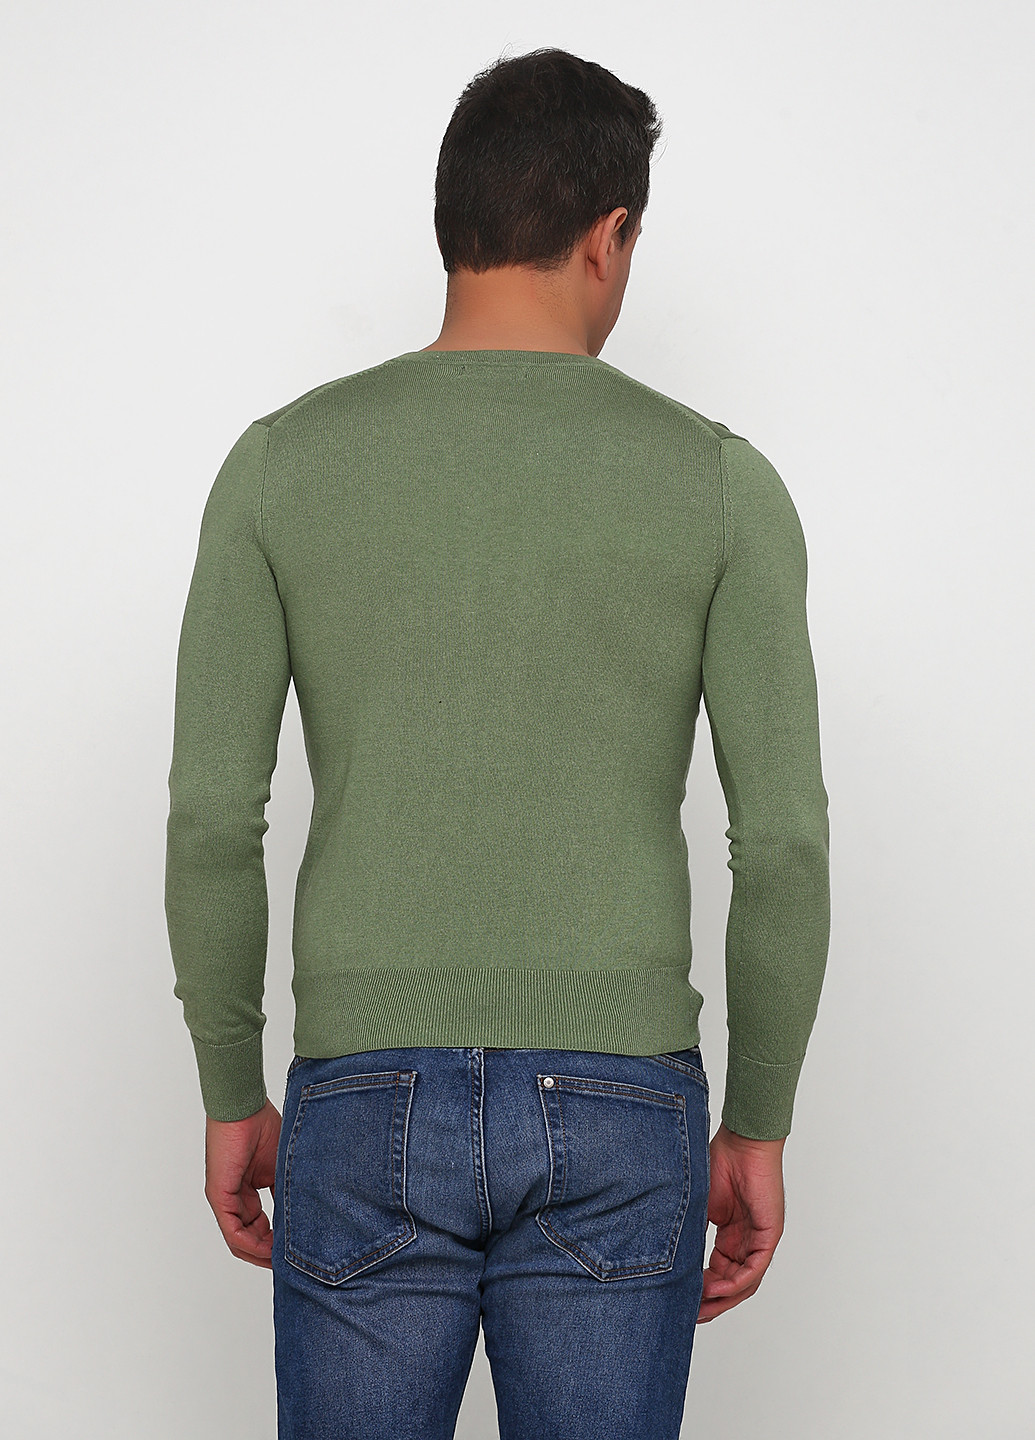 Зеленый демисезонный пуловер пуловер Banana Republic